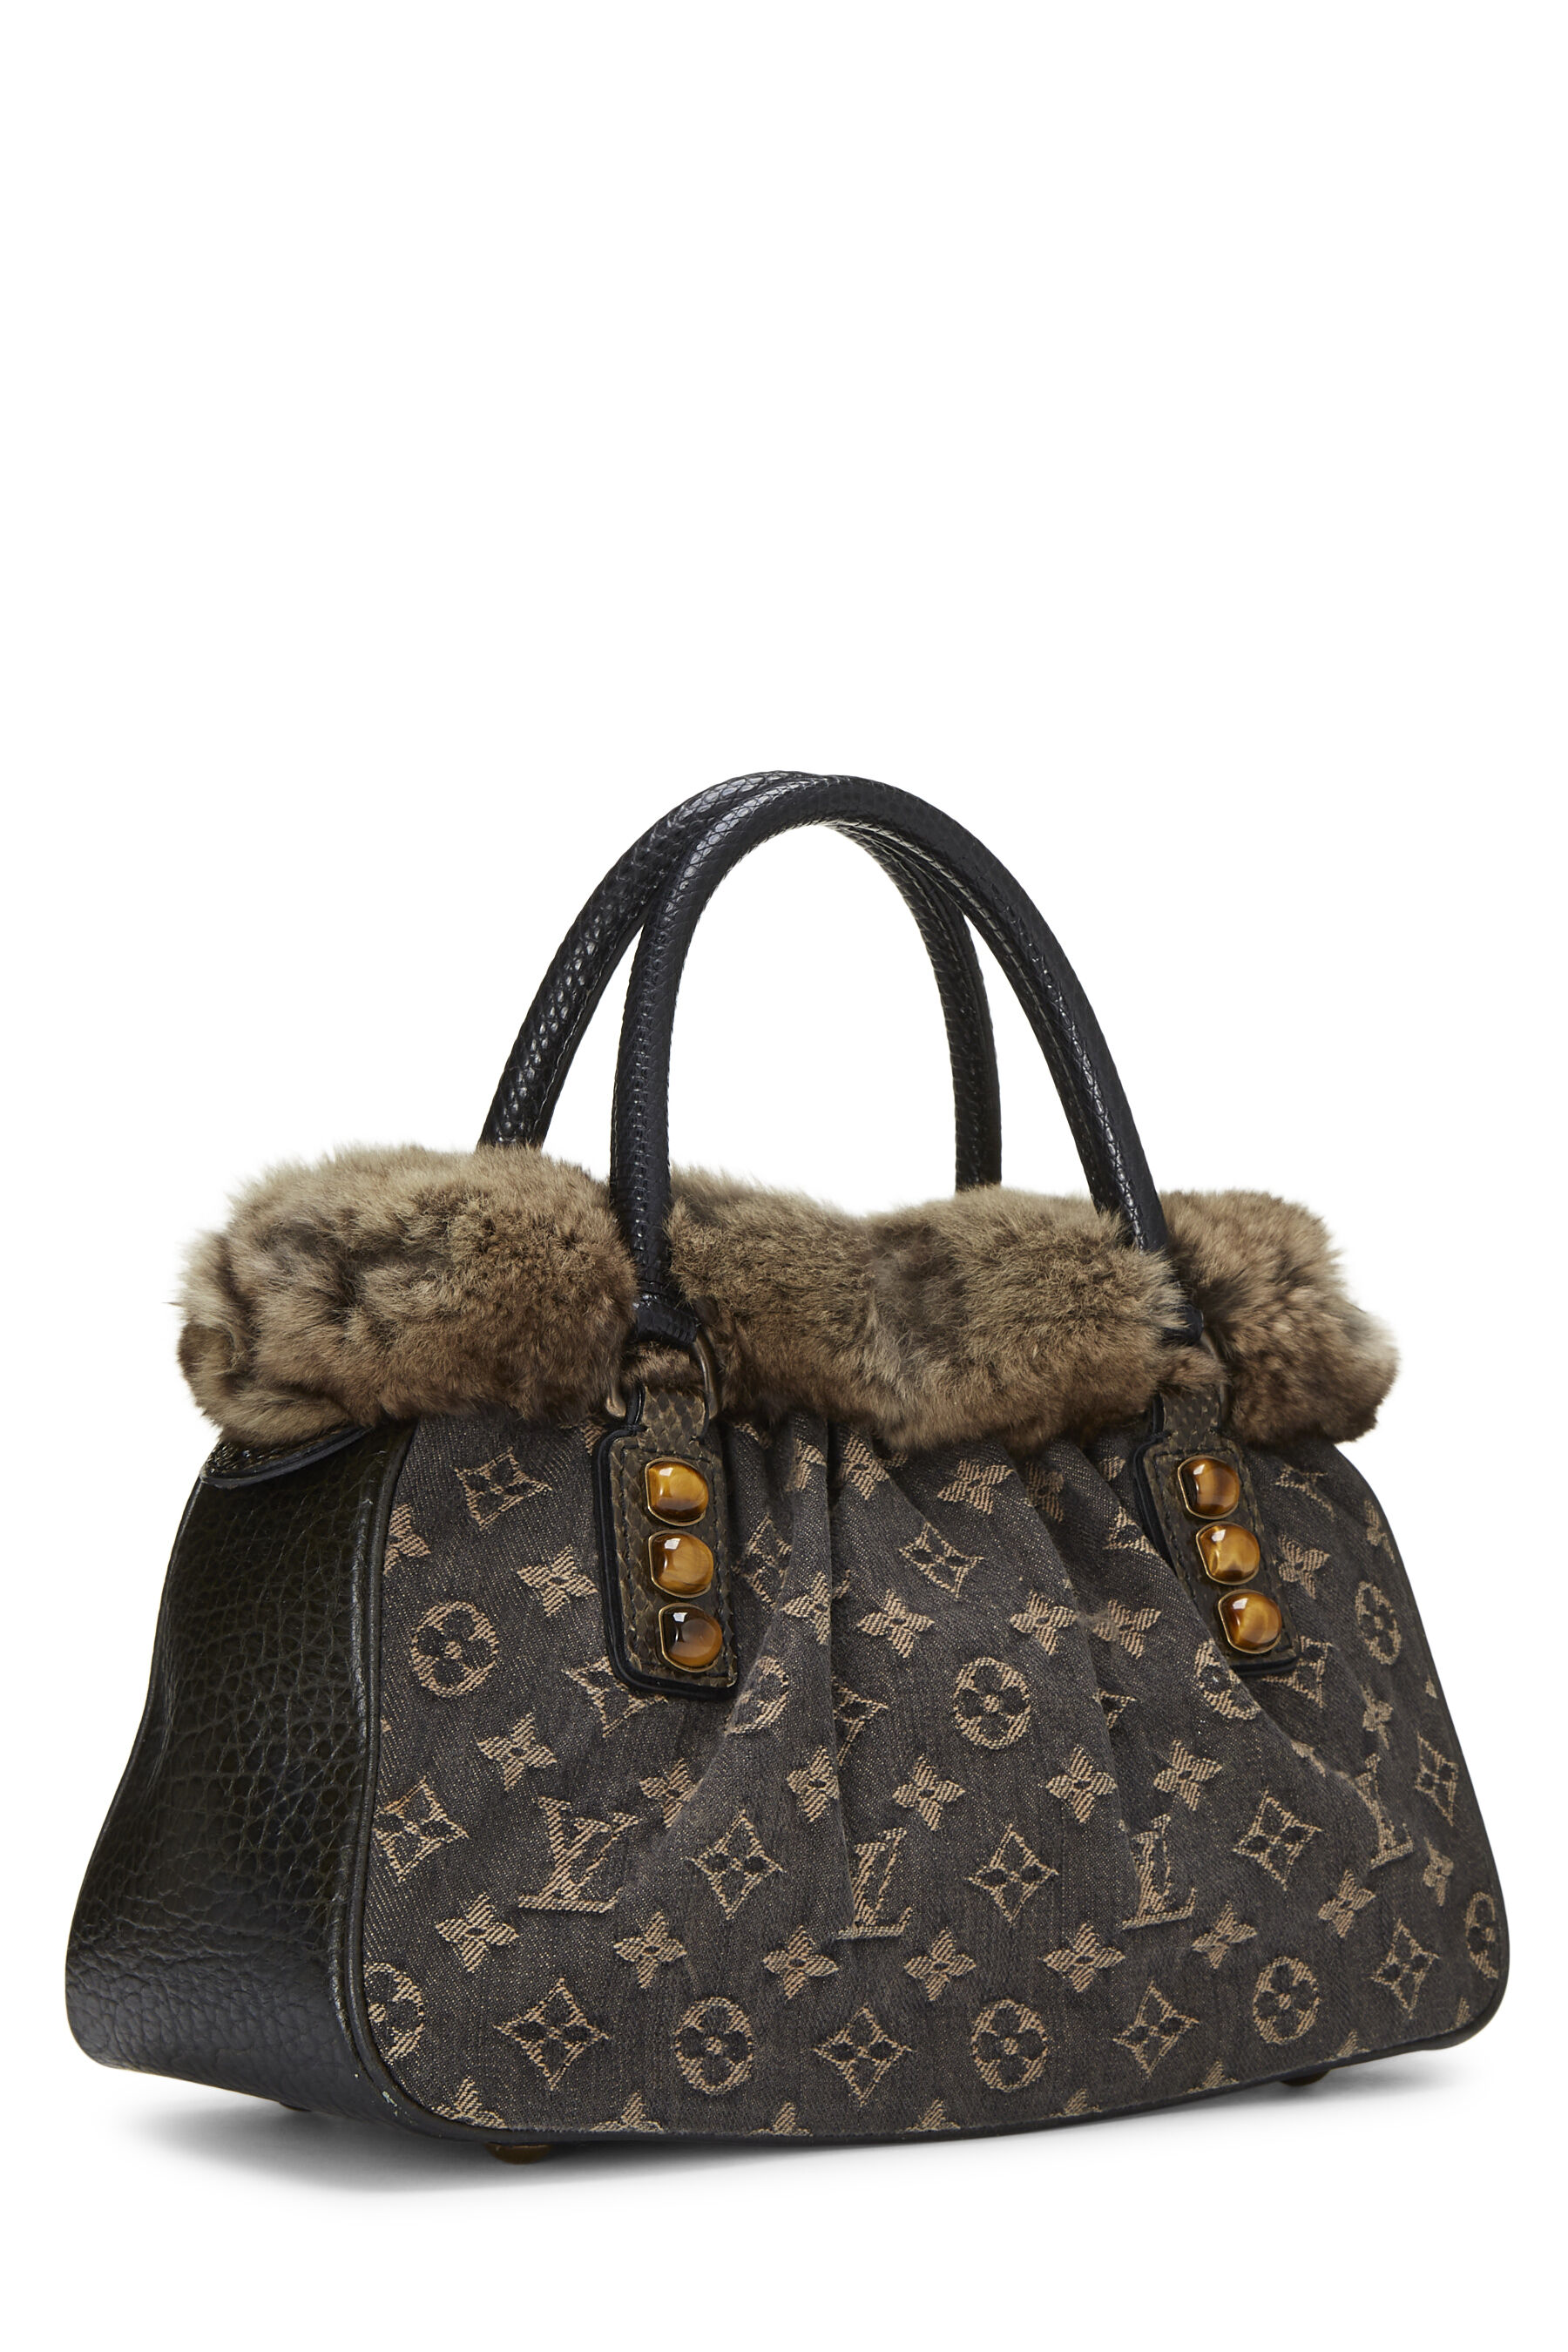 lv bag with fur